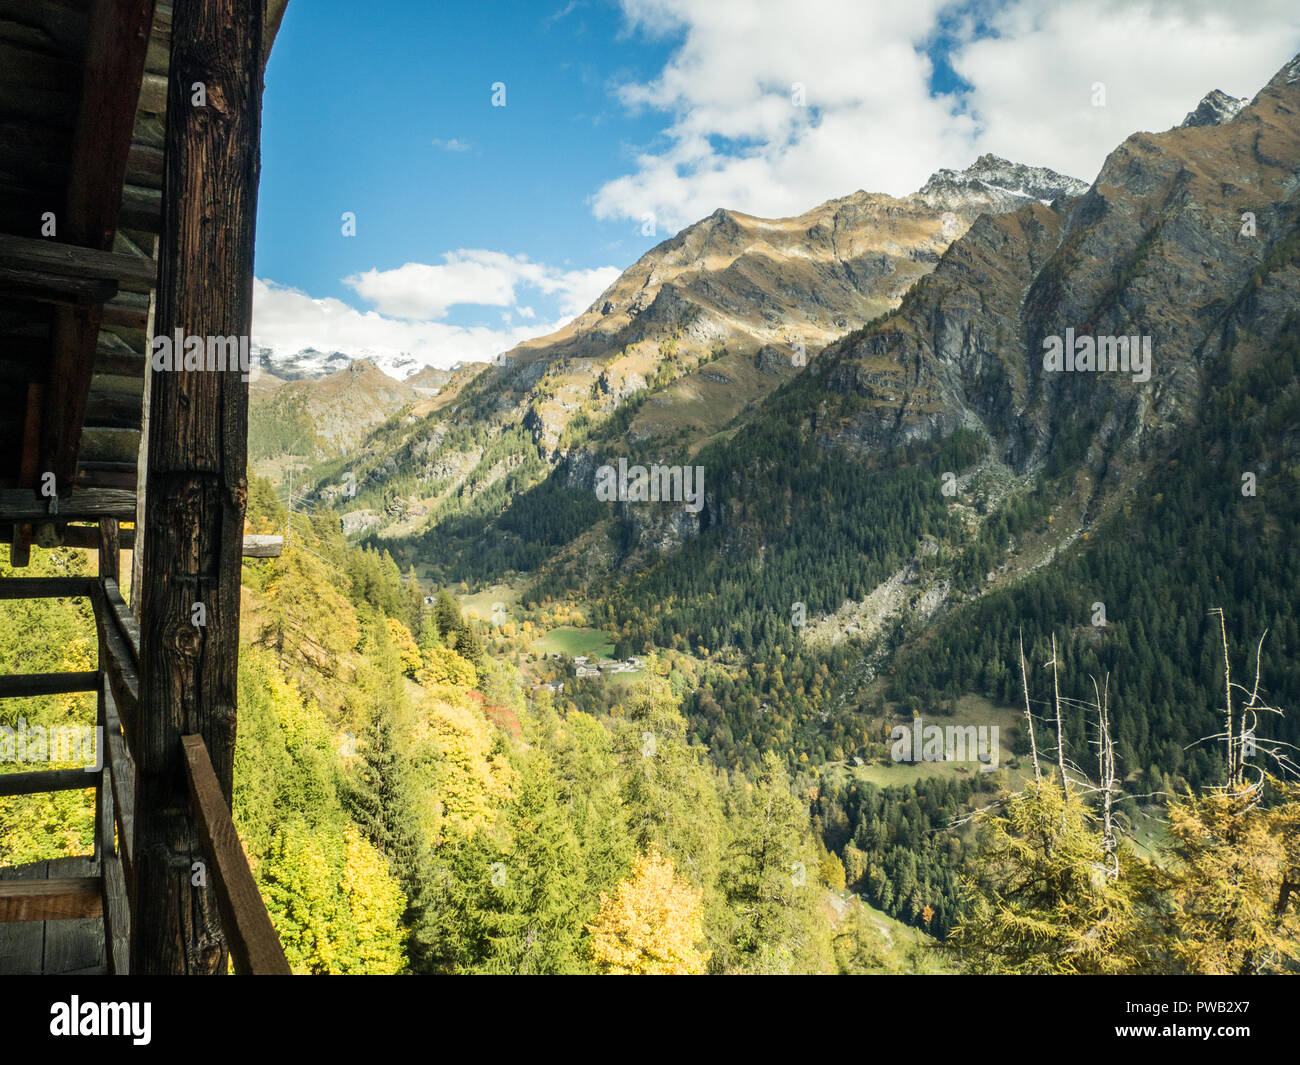 Anzeigen von Gaby, einem Dorf im Gressoney Tal, in der Region Aosta Tal'NW Italien Stockfoto